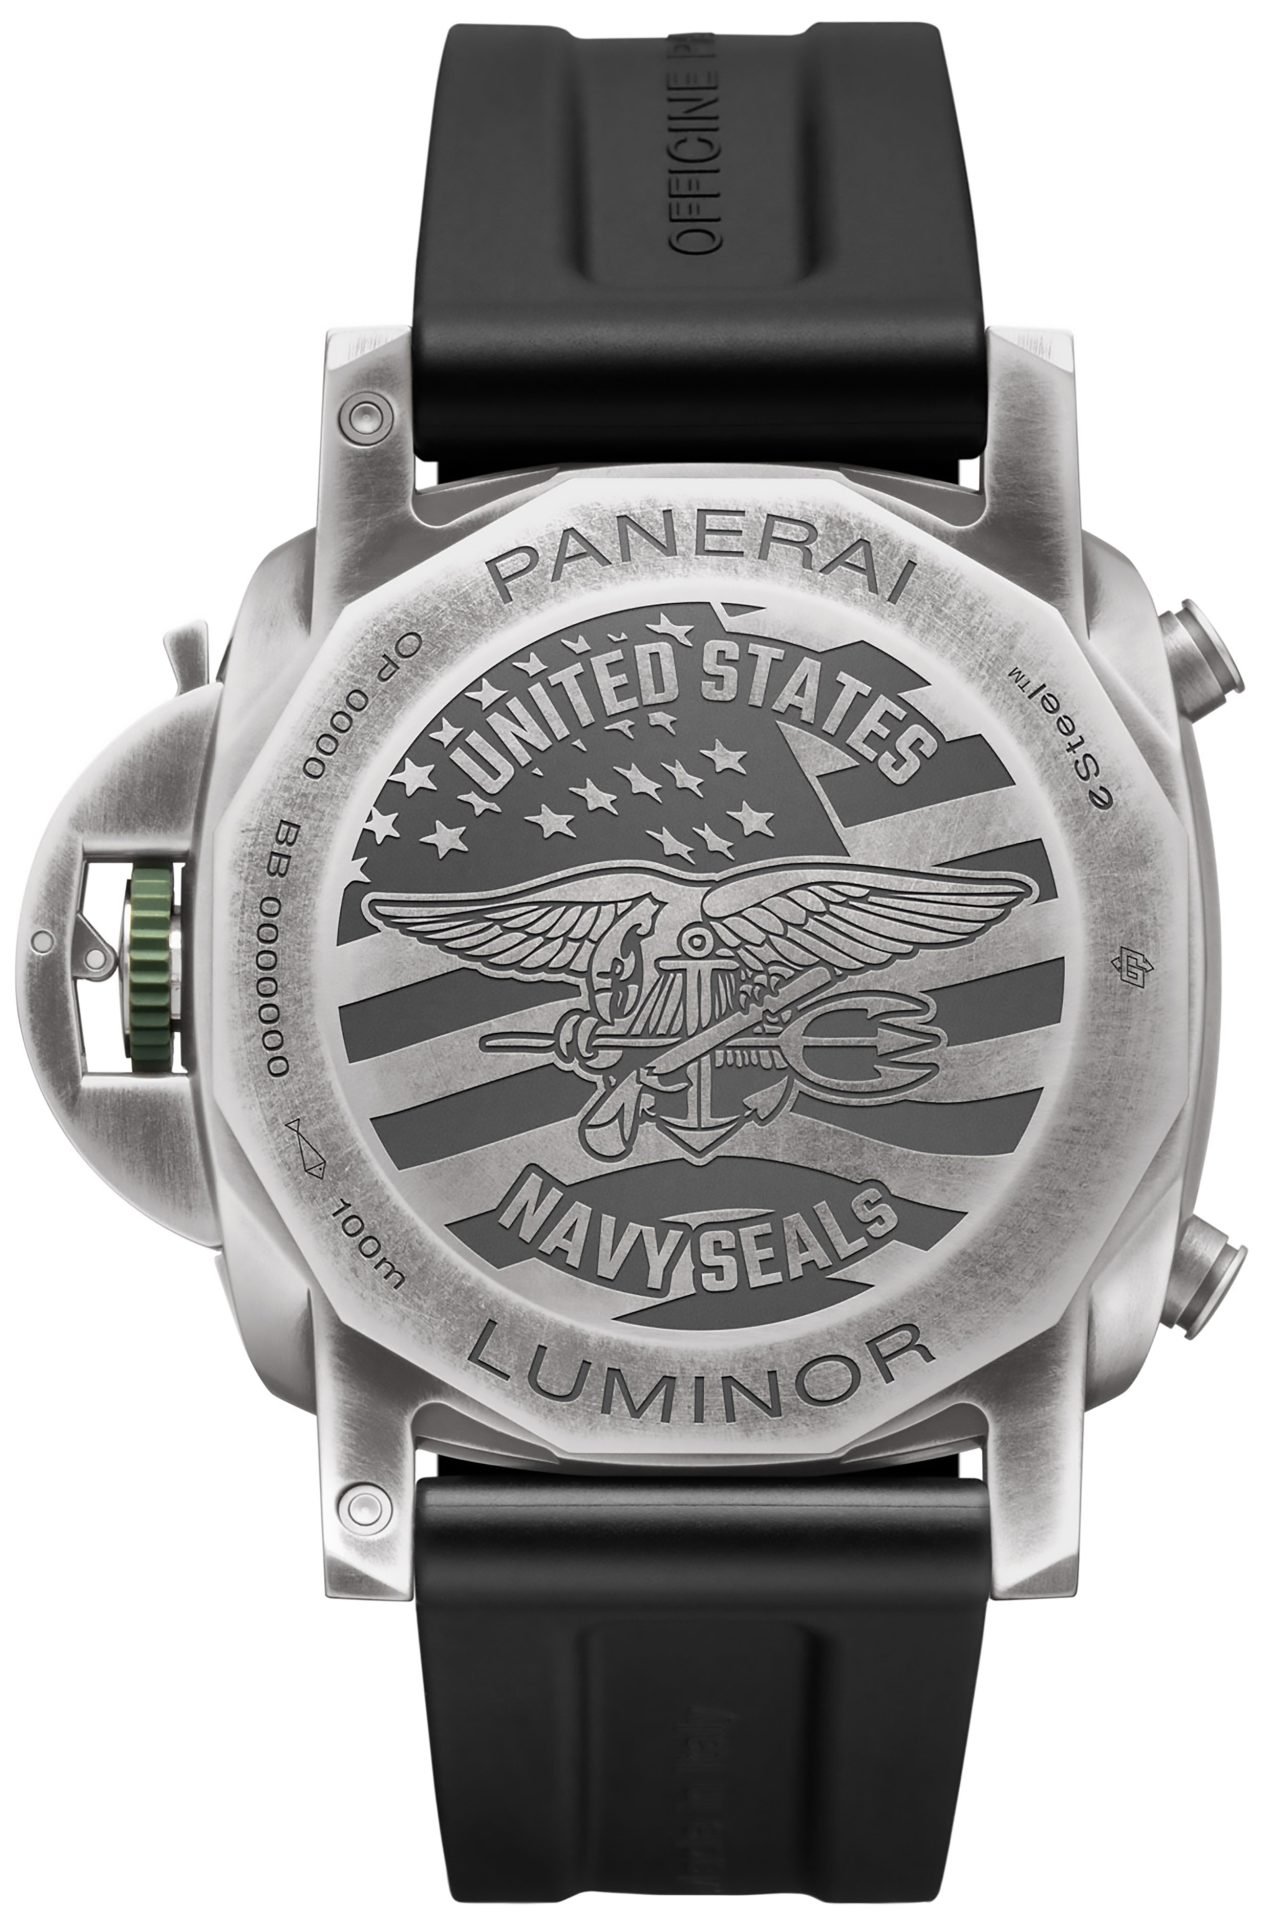 1695233008 605 Navy Seals Panerai Watches